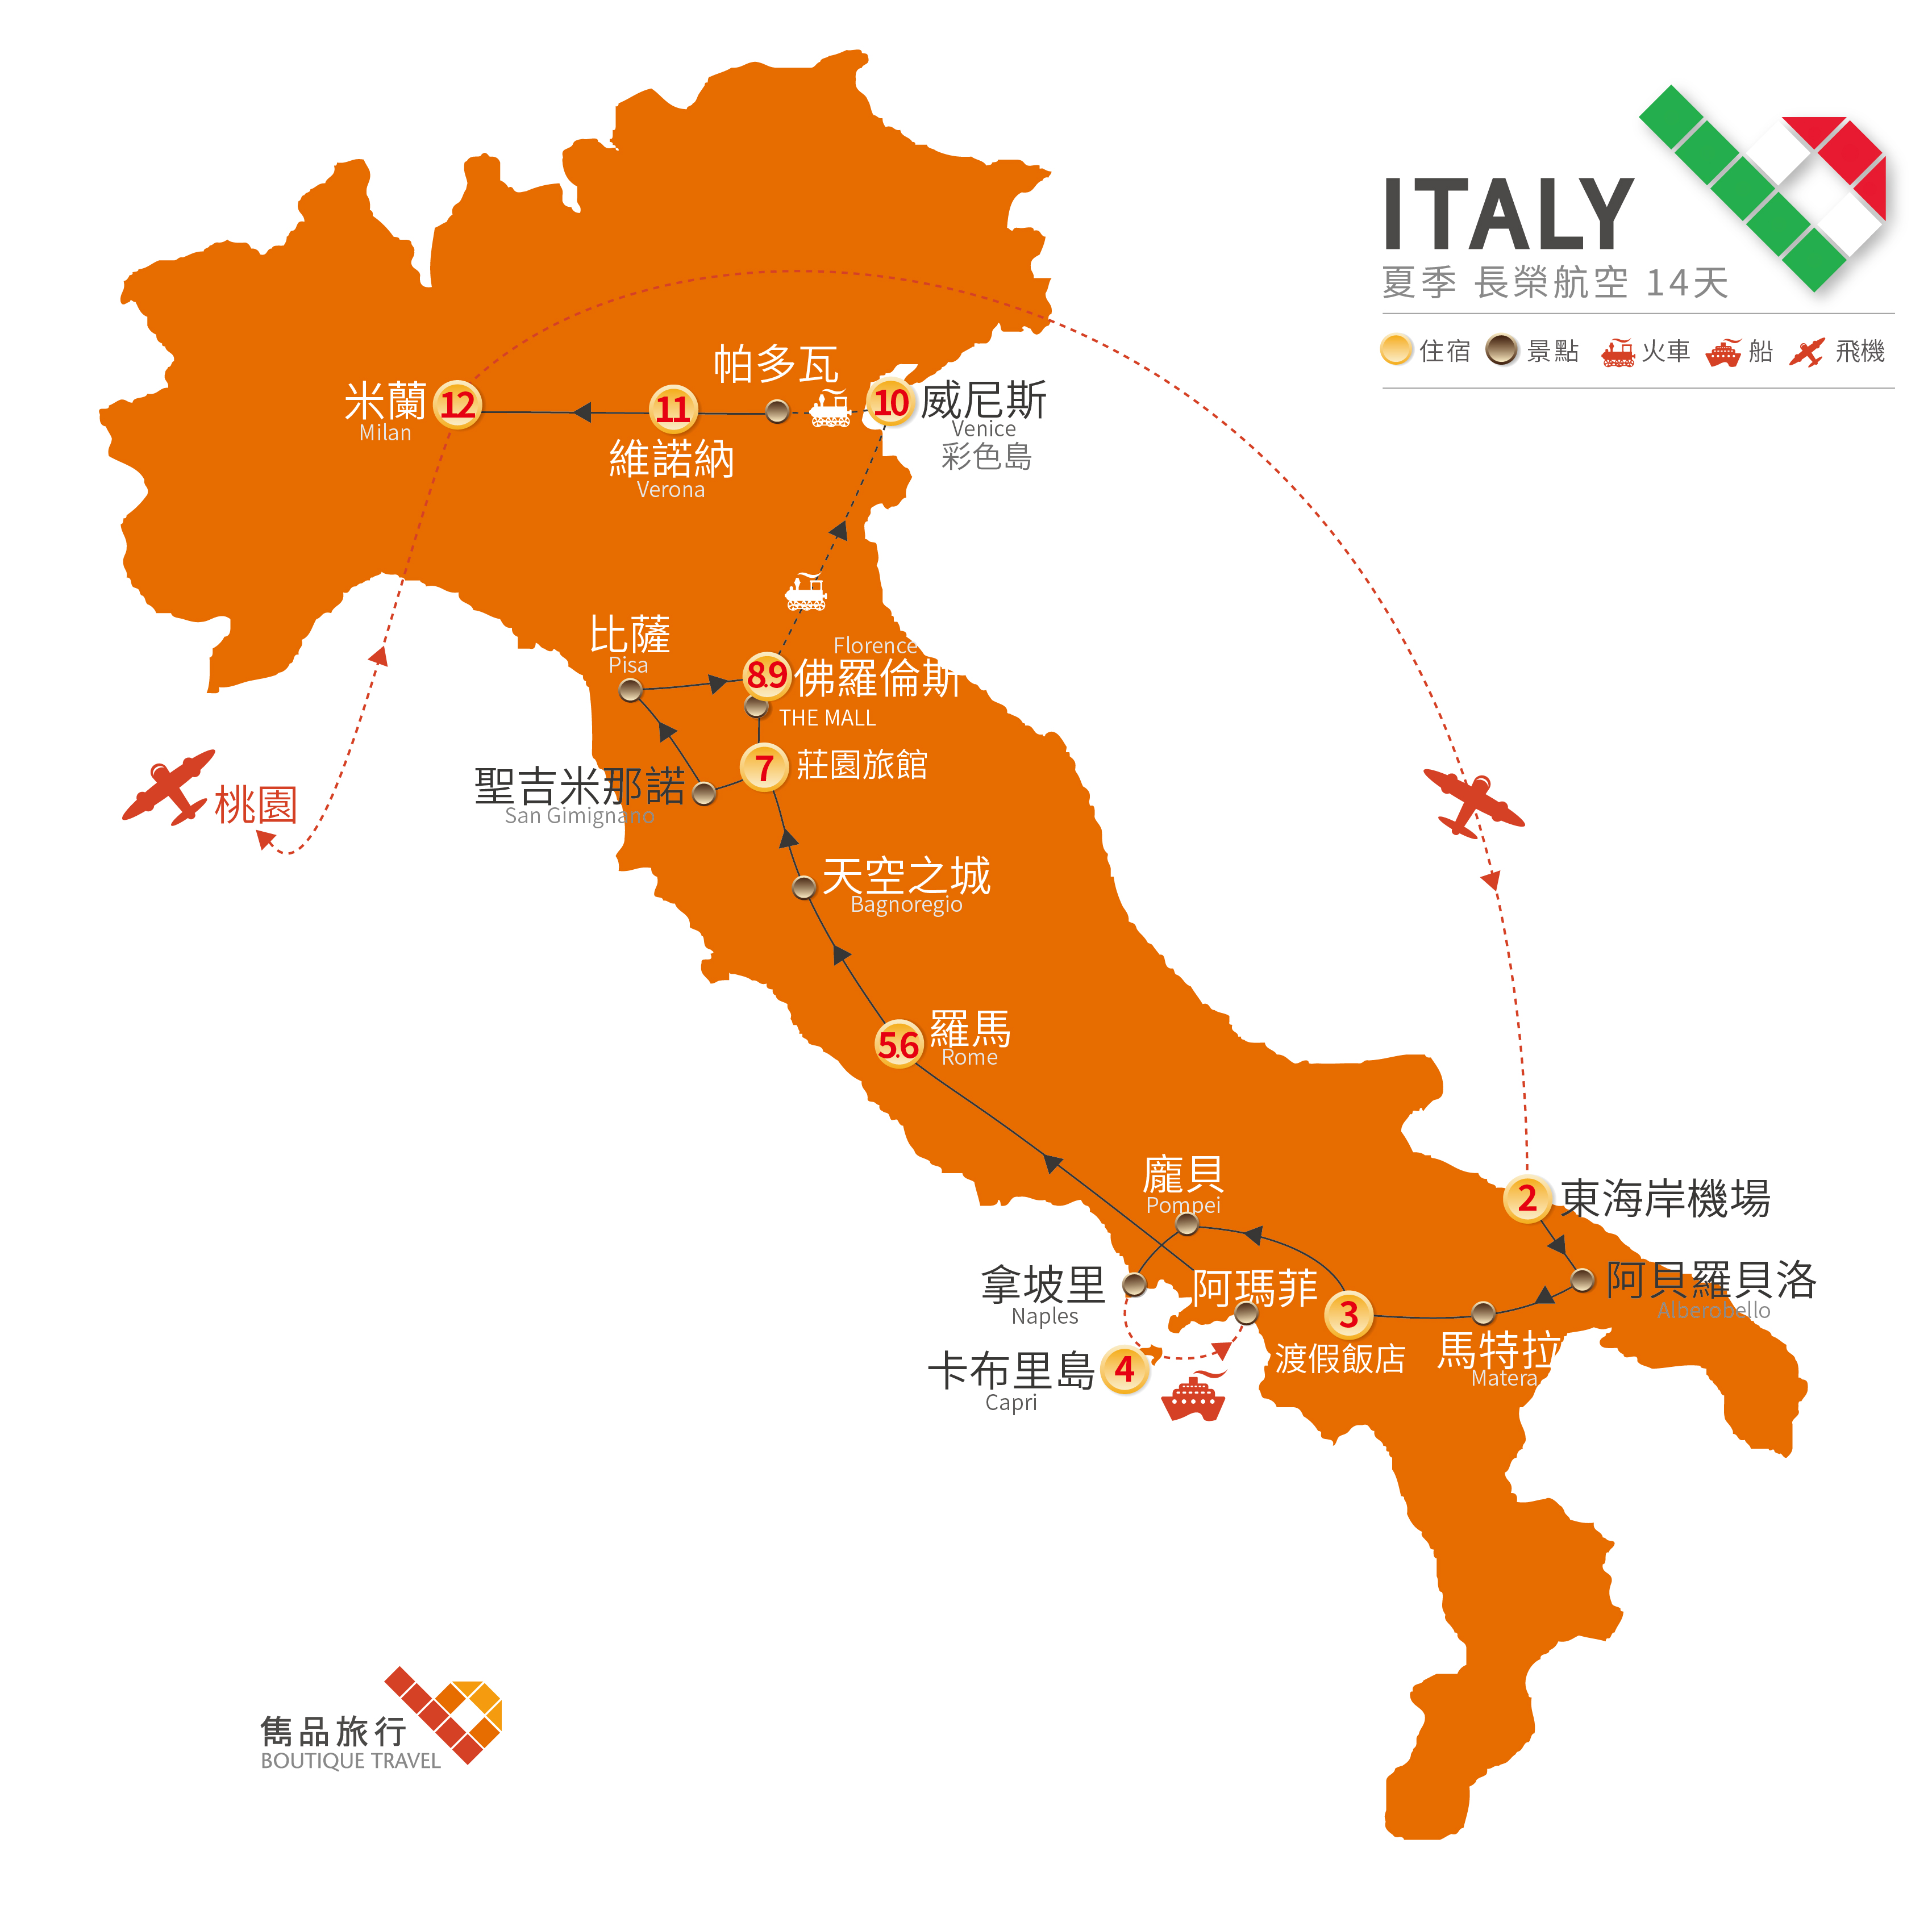 義大利 旅行地圖-樂遊 仲夏 義大利 14天